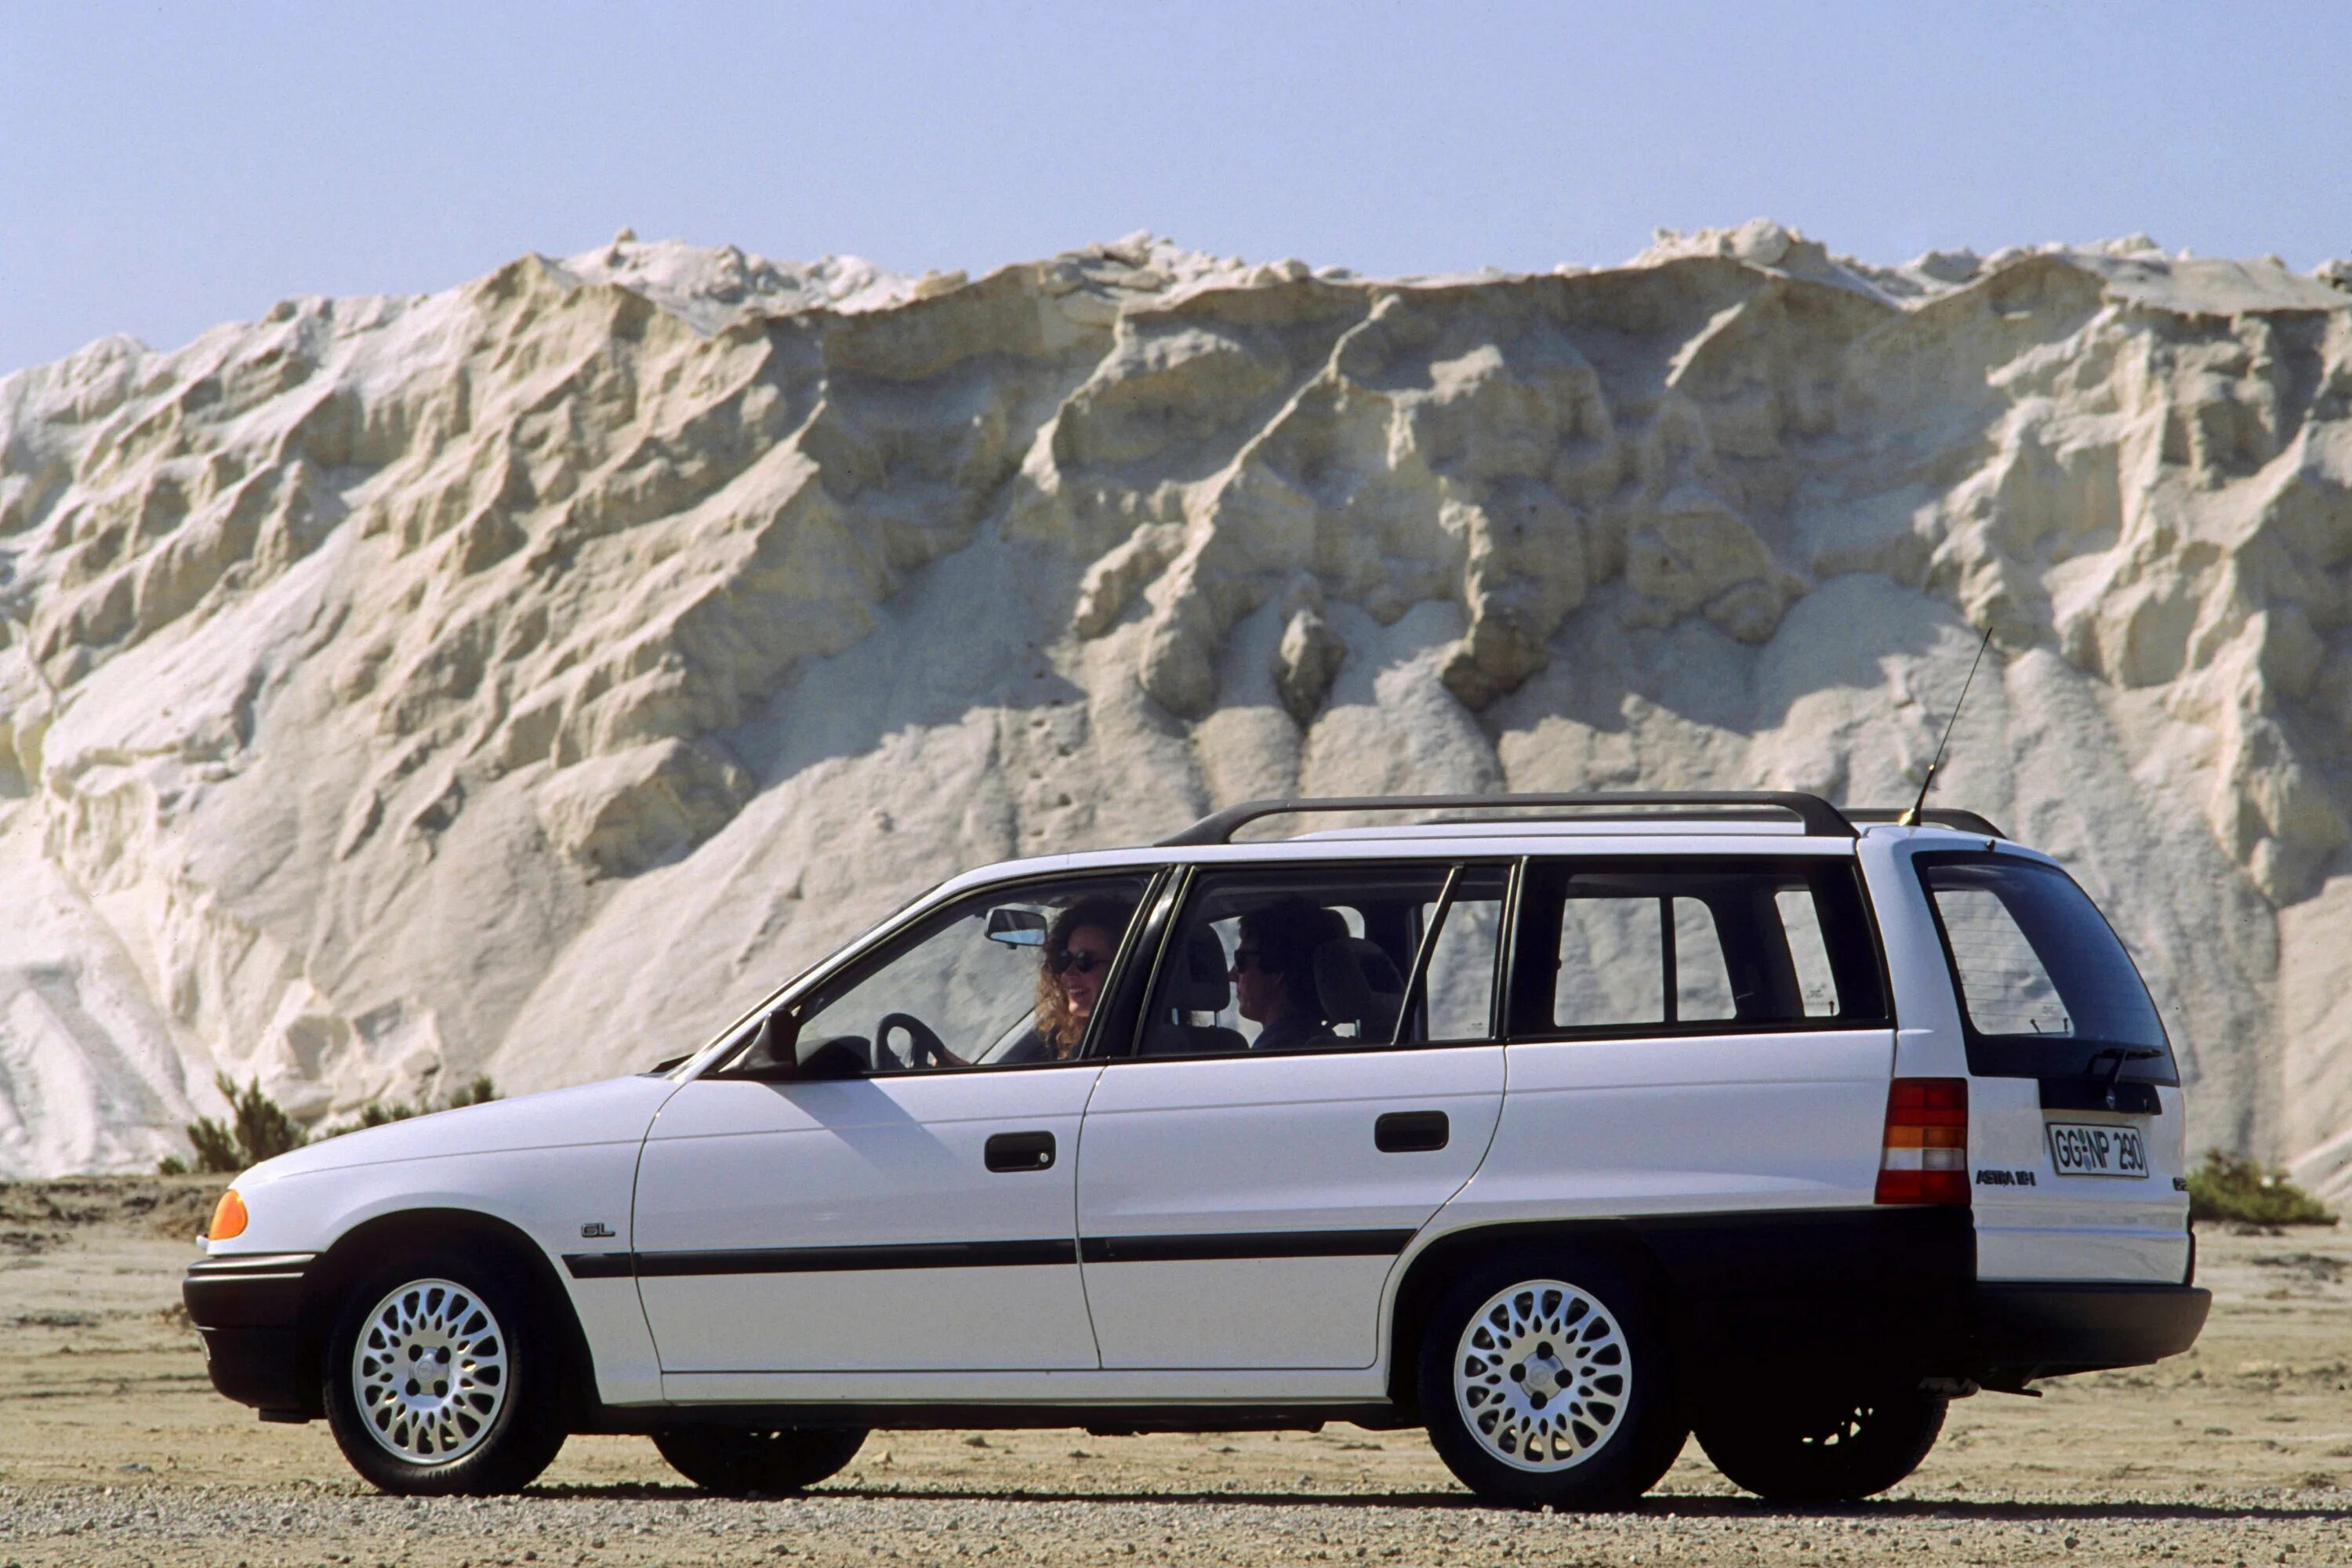 Opel Astra Caravan универсал 1997. Opel Astra f Caravan. Opel Astra f 1997 универсал.